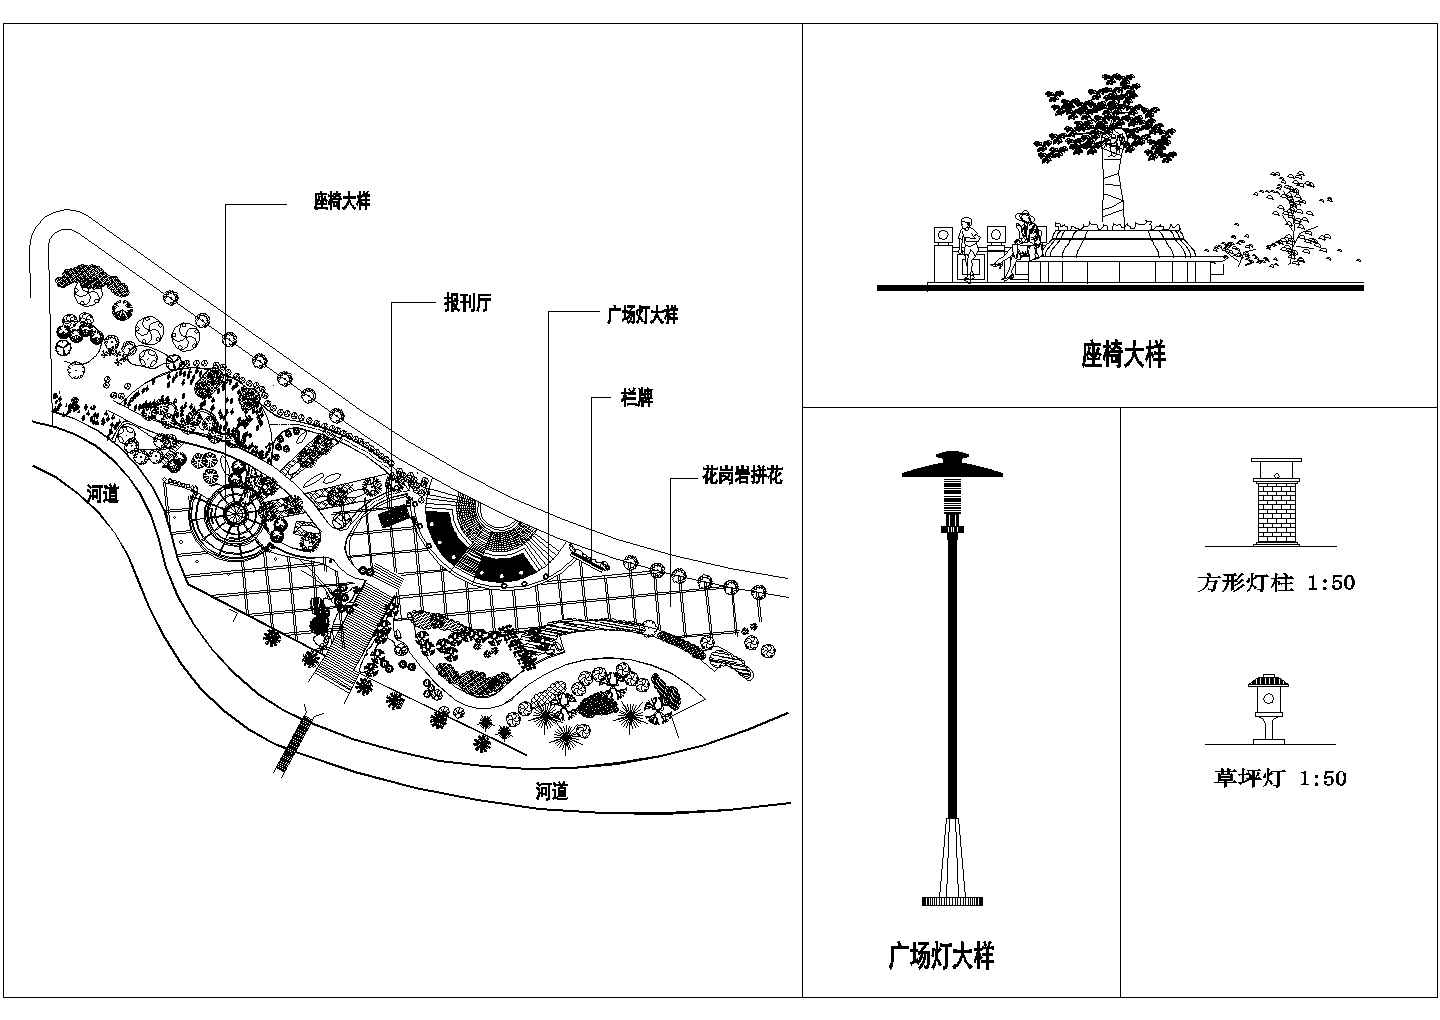 四川某县城滨河公园CAD景观环境设计方案图